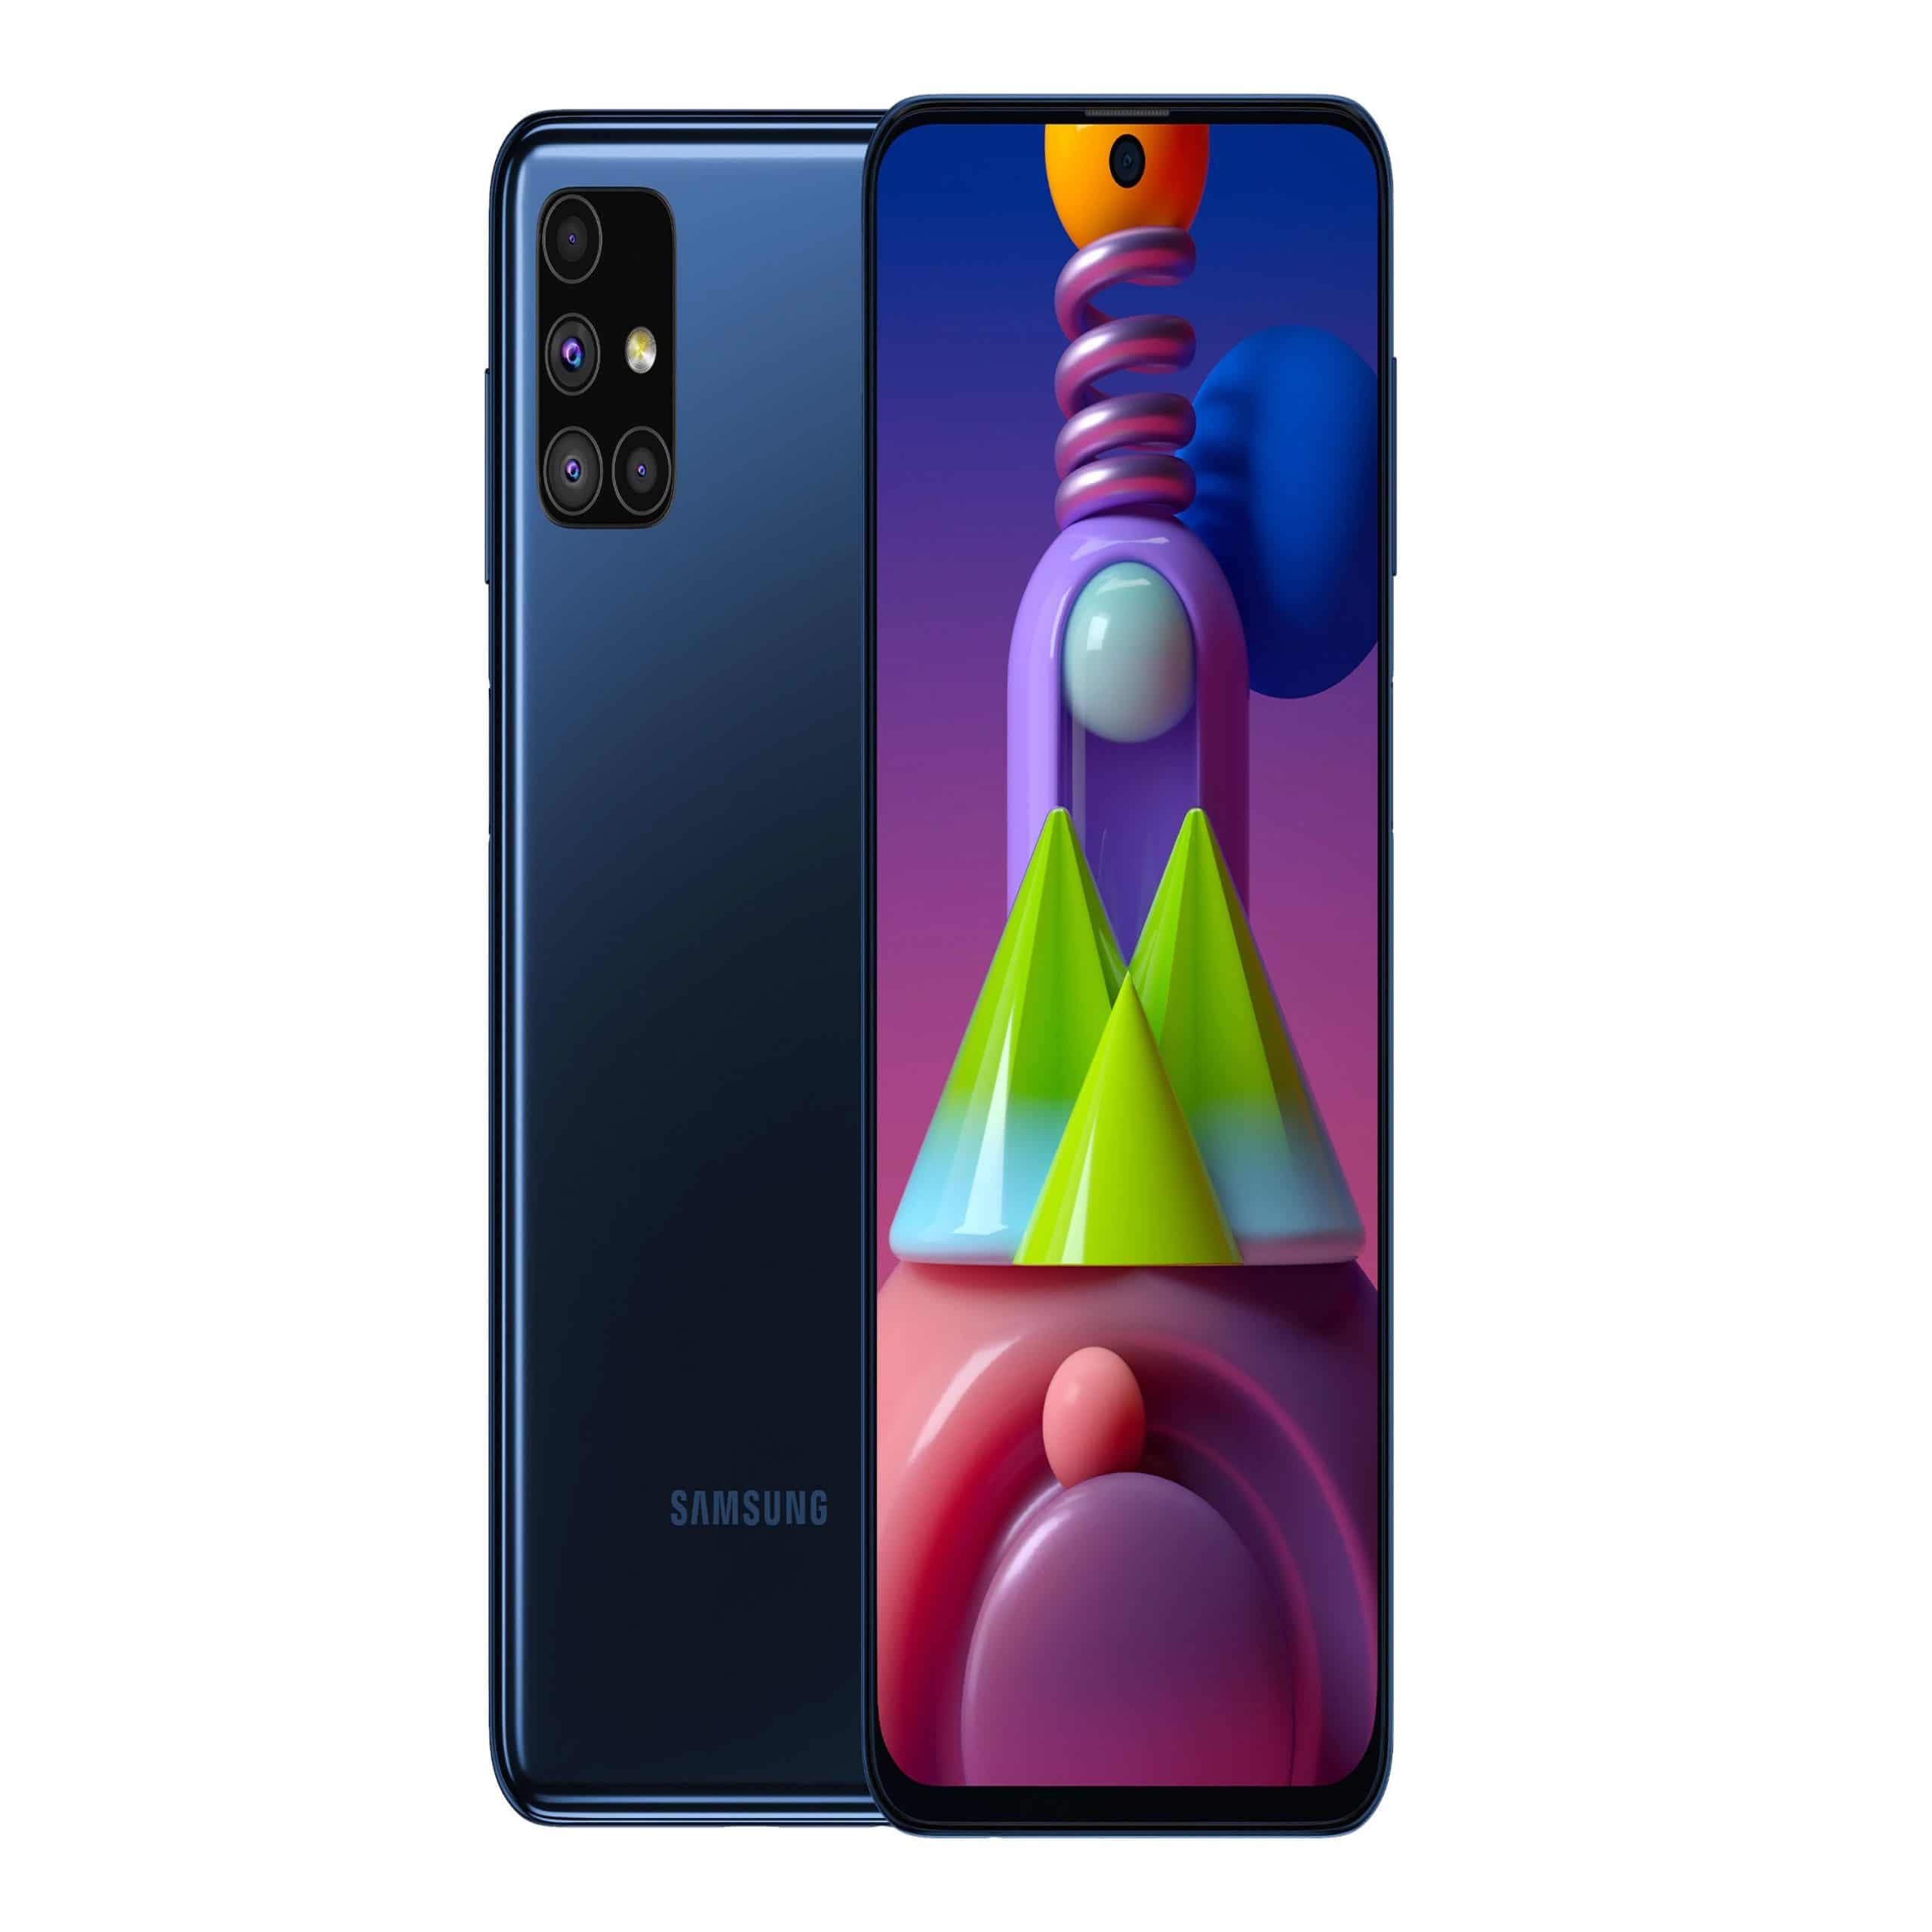 Samsung Galaxy M51 scaled - Dalilk